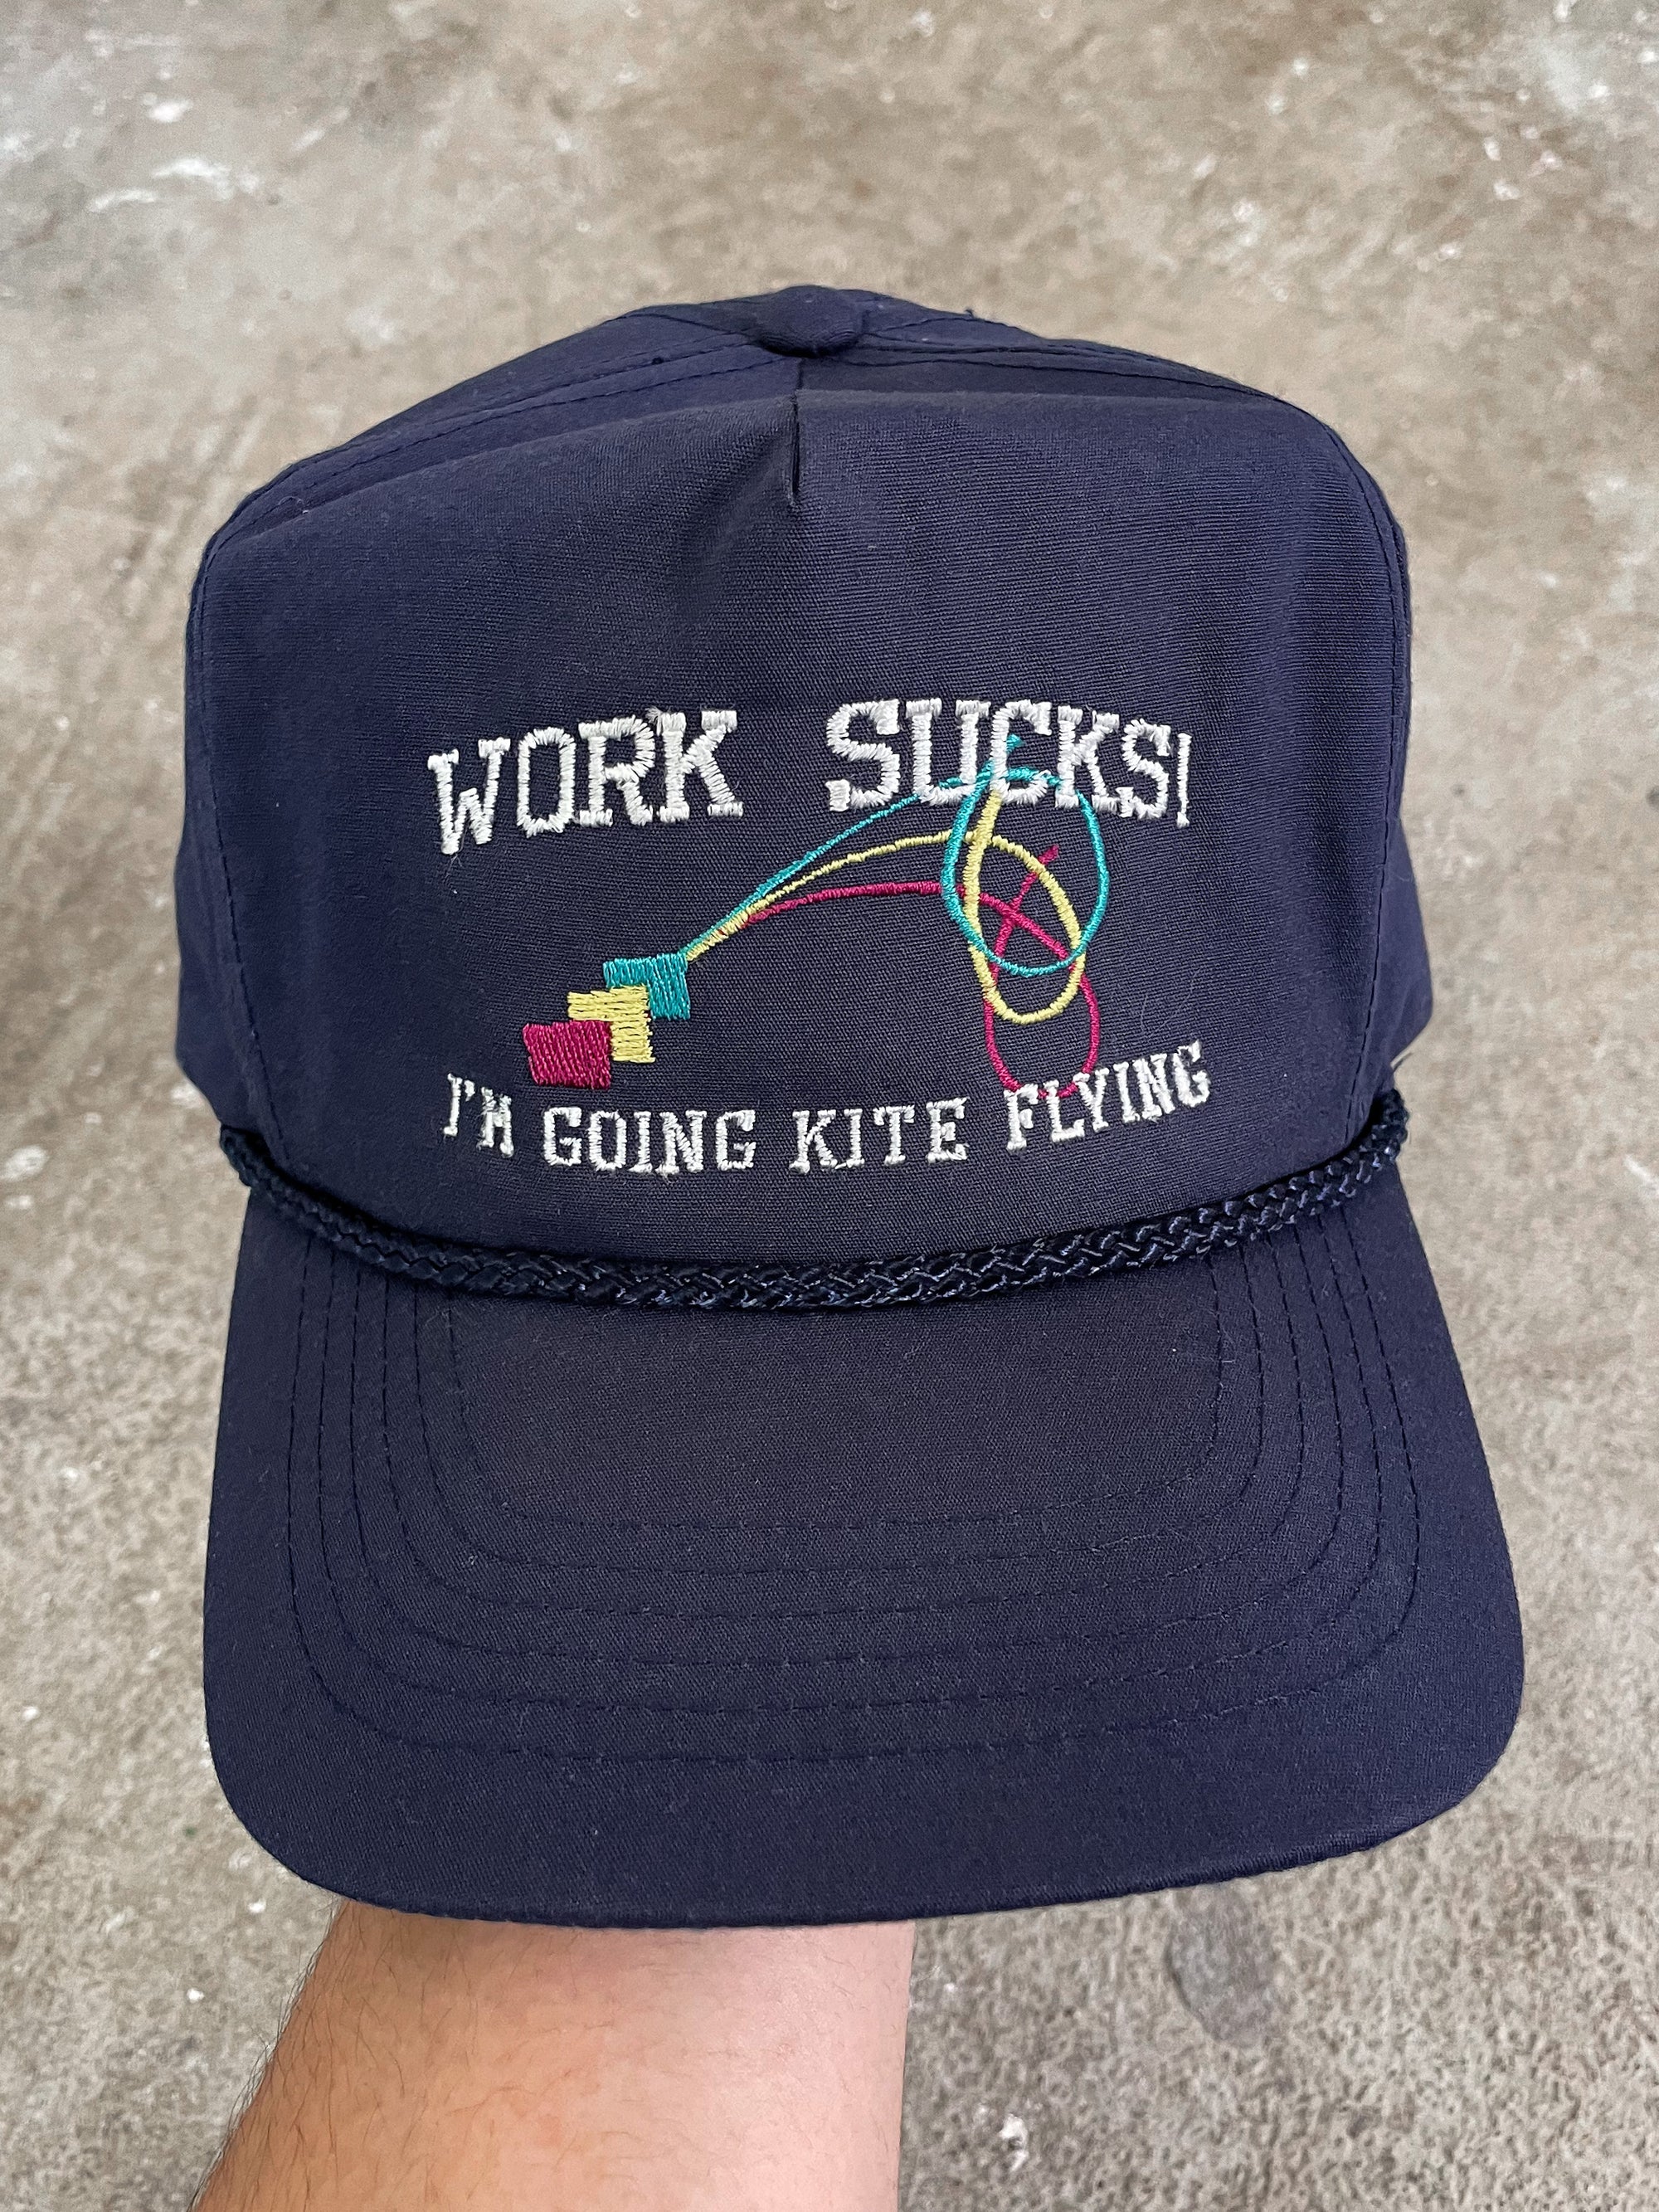 1980s “Work Sucks! Im Going Kite Flying” Trucker Hat